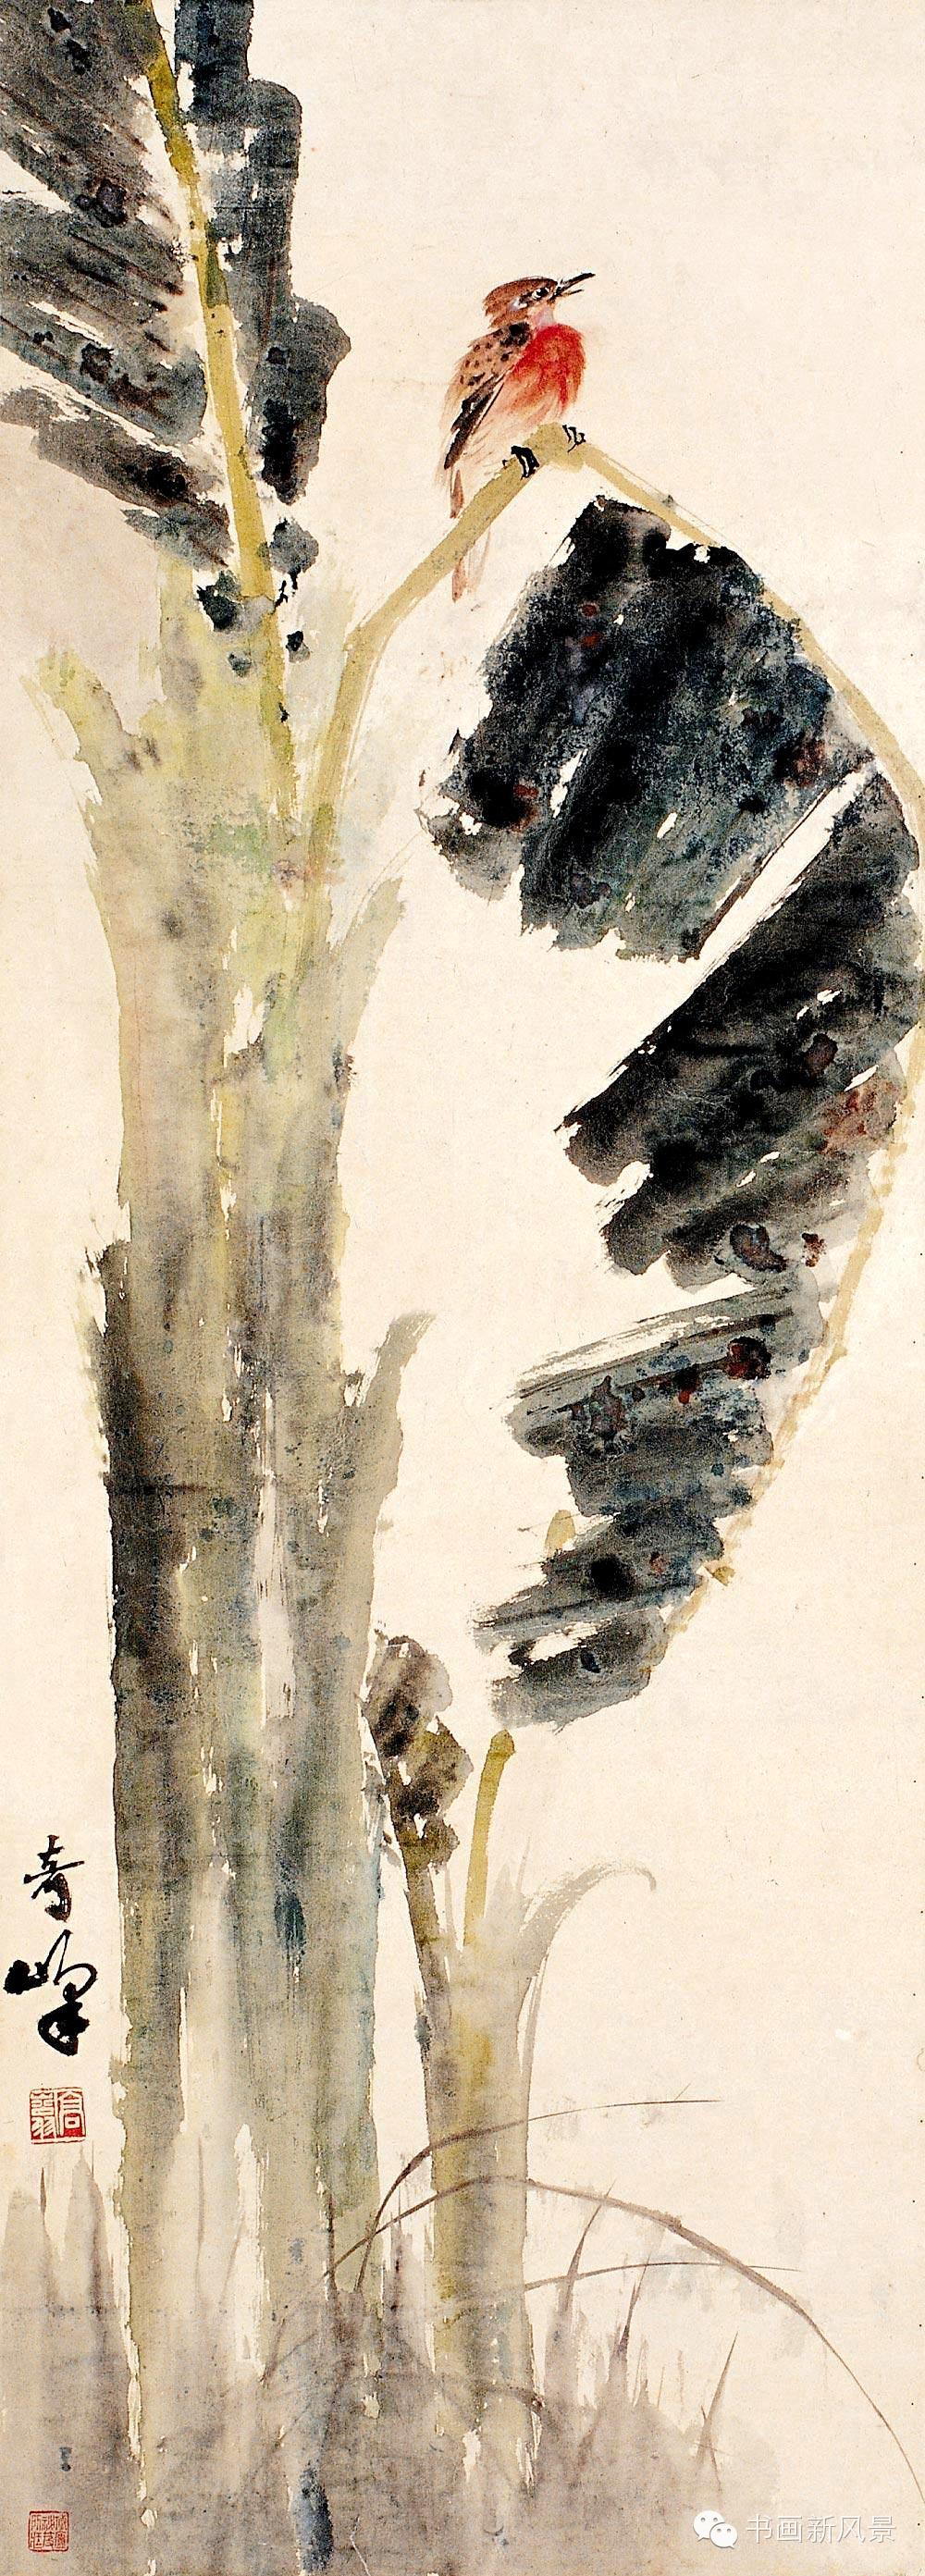 "岭南画派"注重写生,融汇中西绘画之长,并保持了传统中国画的笔墨